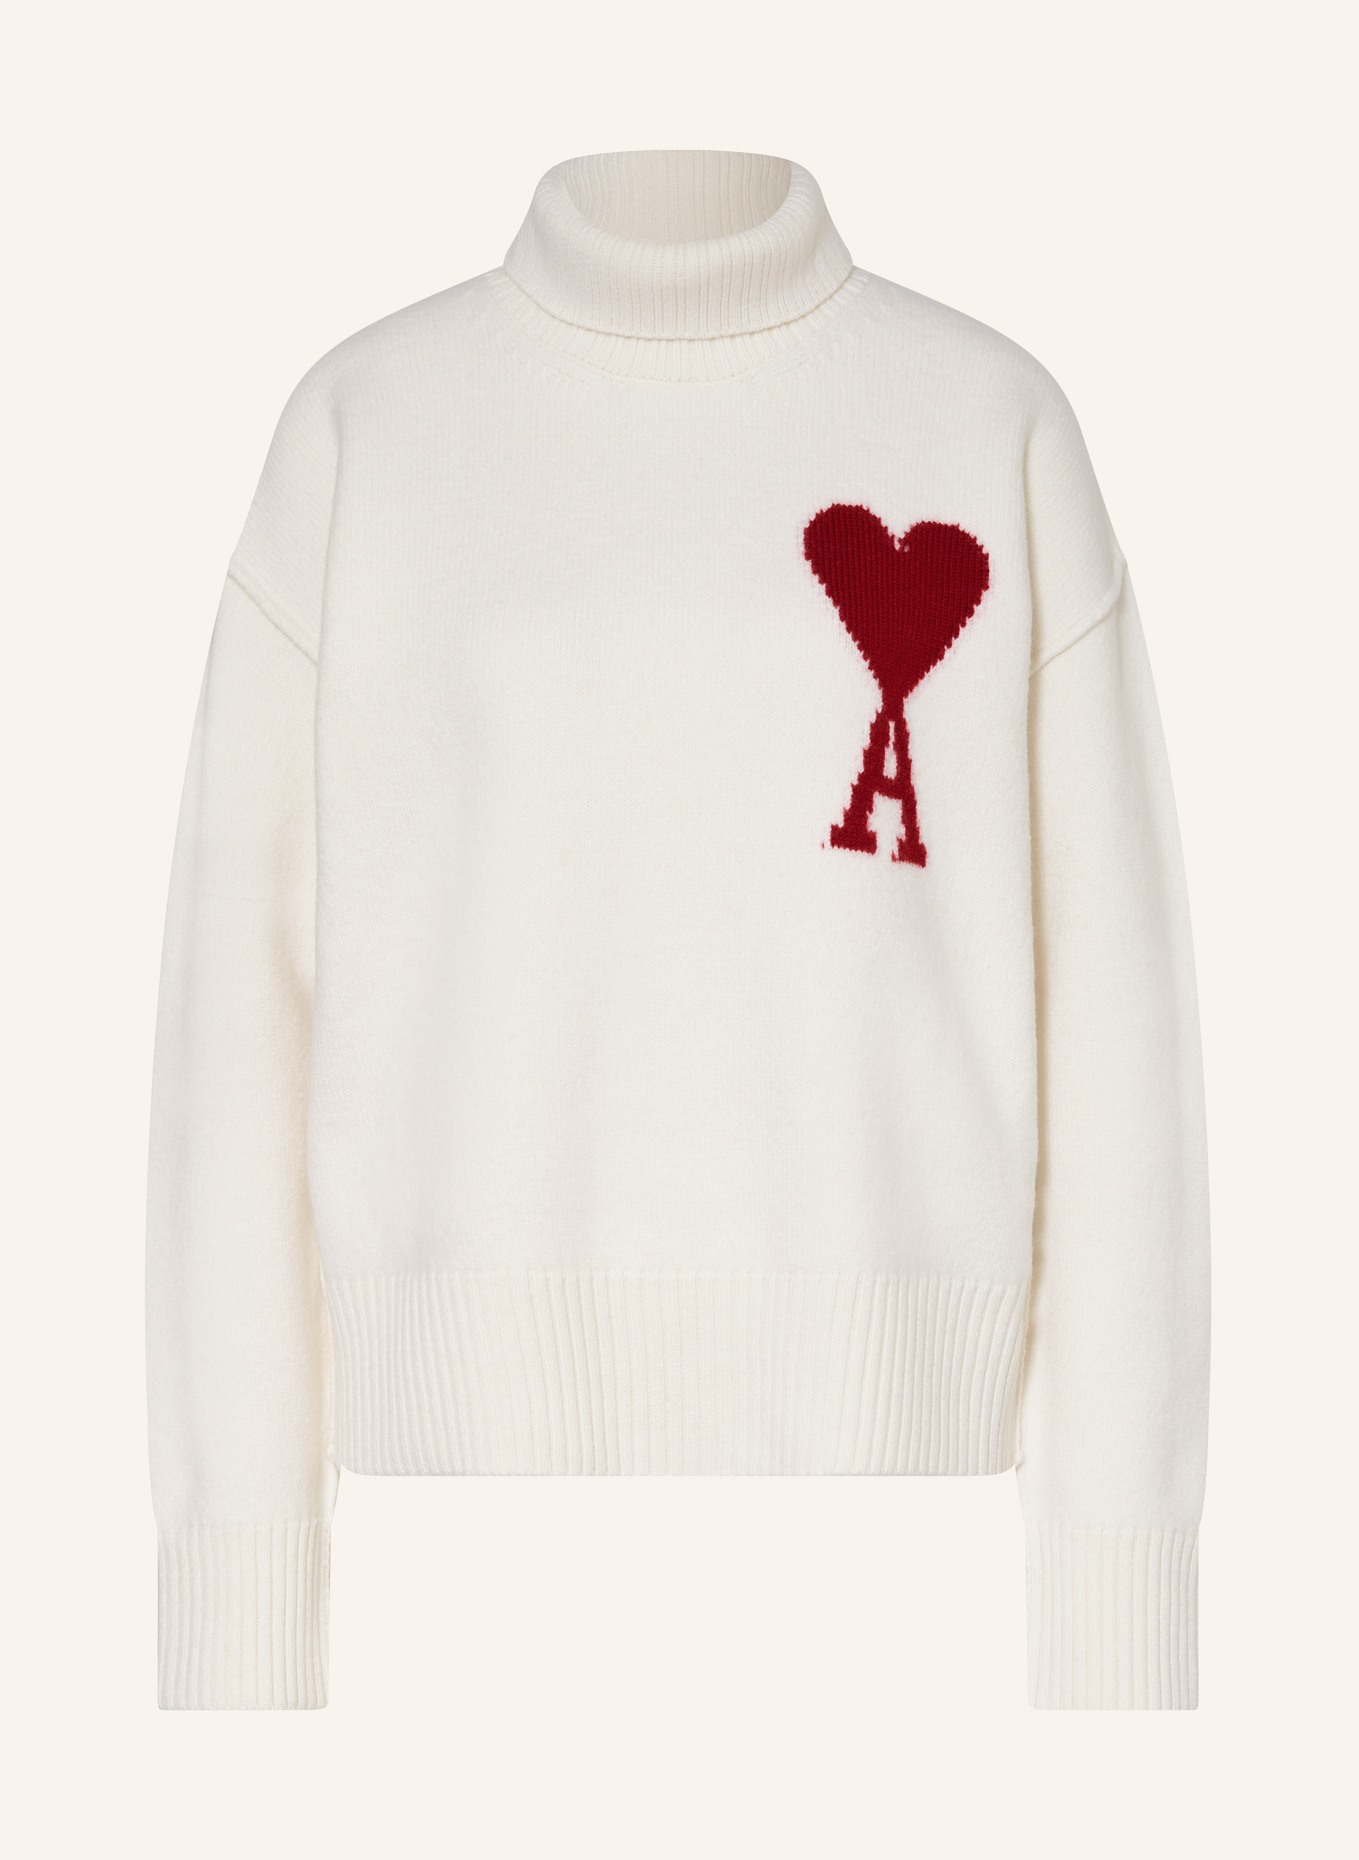 AMI PARIS Turtleneck sweater, Color: ECRU (Image 1)